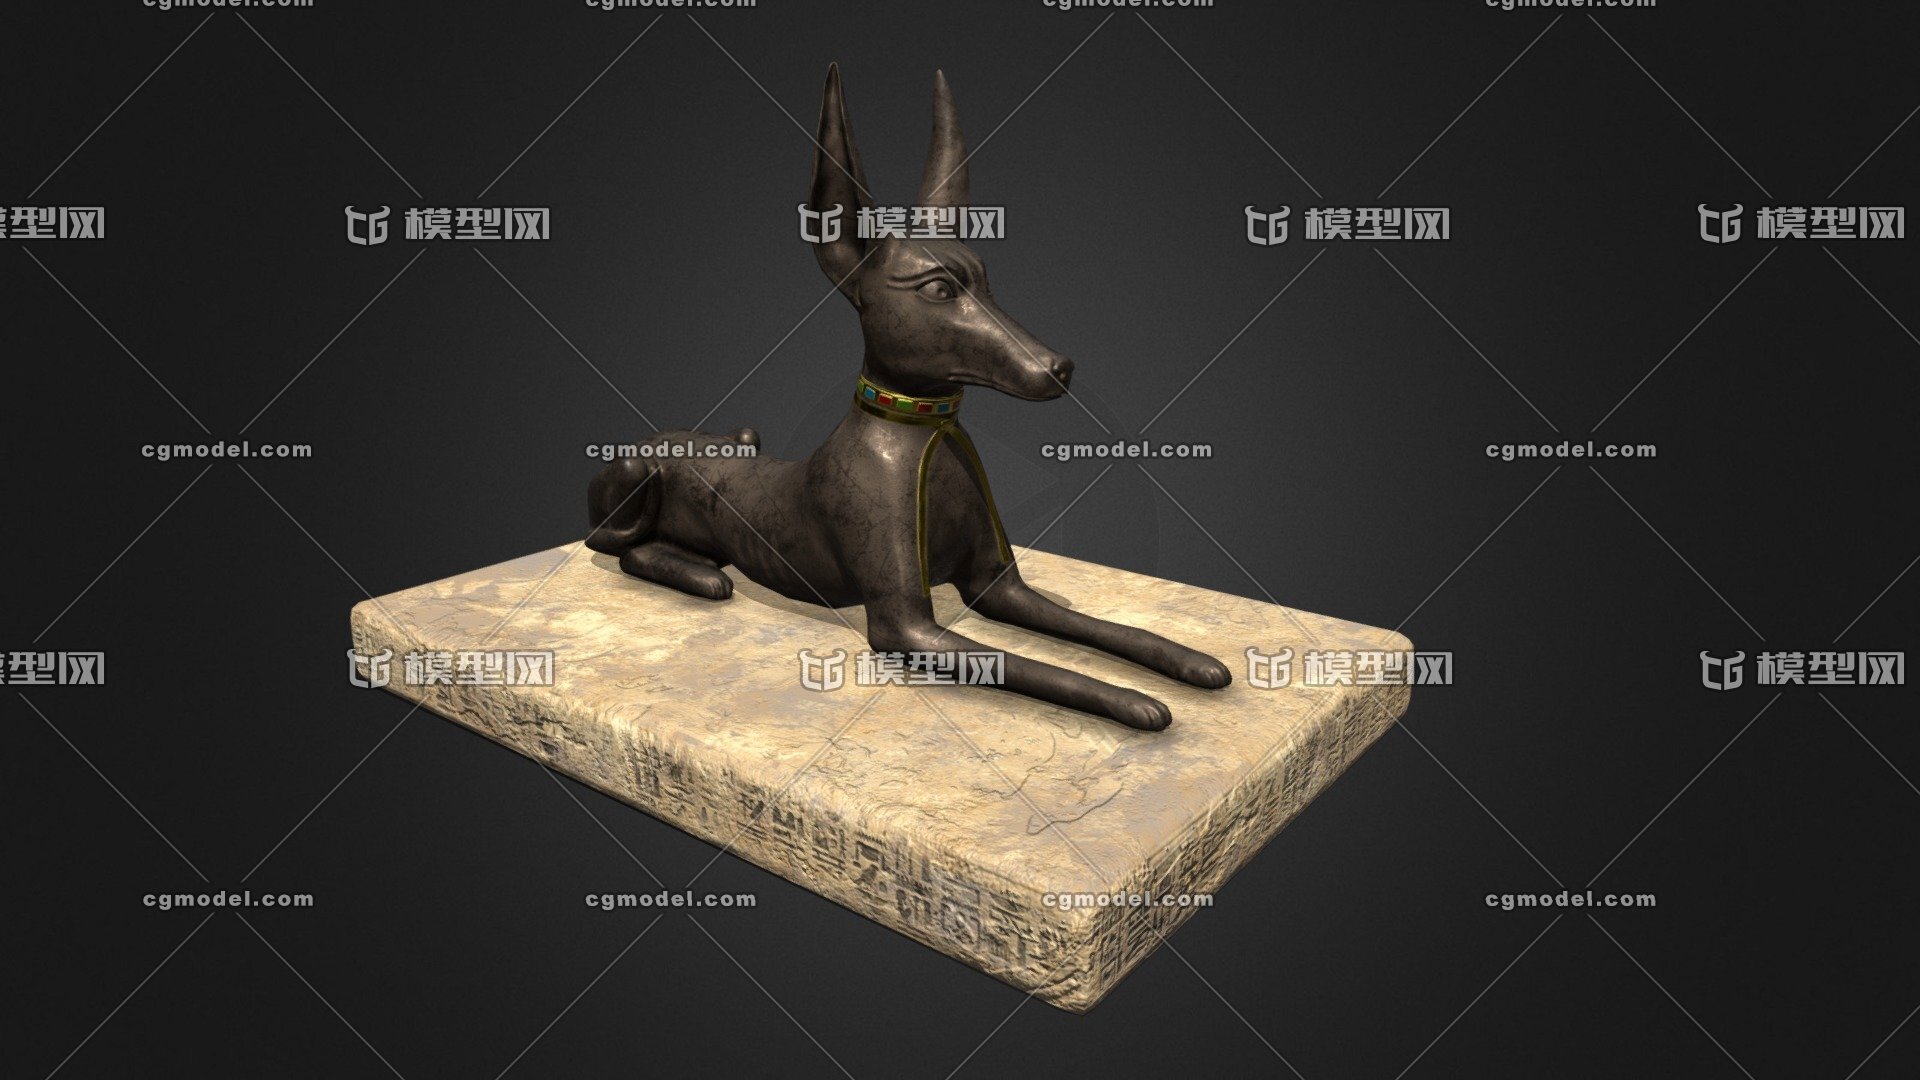 阿努比斯 埃及猎犬 狗 雕像 石雕 文物 埃及法老 石板 刻字 死神 神话